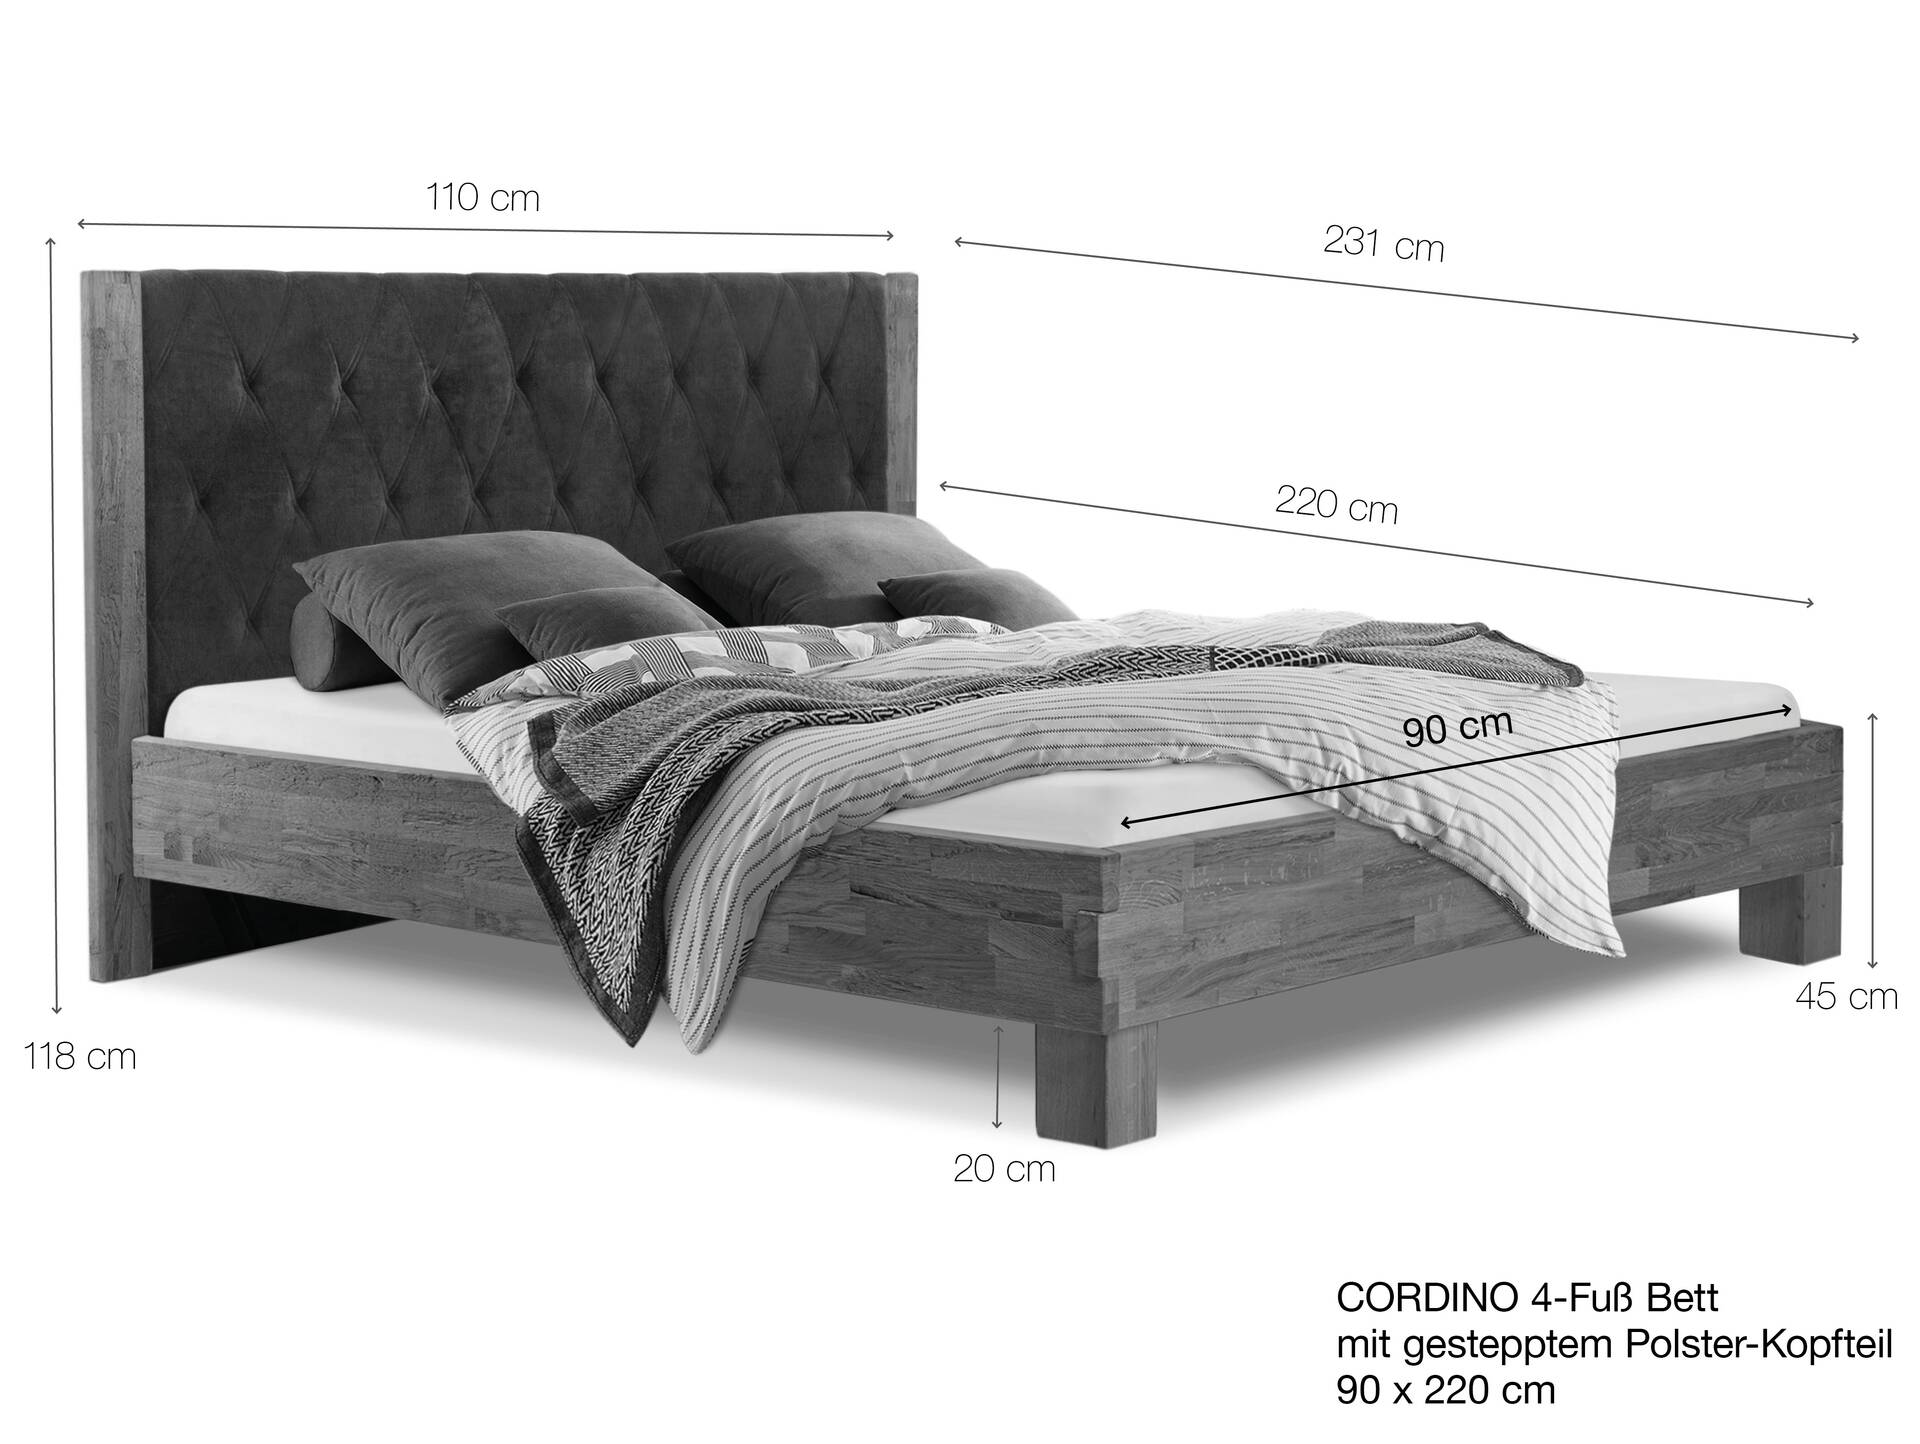 CORDINO 4-Fuß-Bett aus Eiche mit gestepptem Polster-Kopfteil, Material Massivholz 90 x 220 cm | Eiche lackiert | Stoff Braun | gebürstet